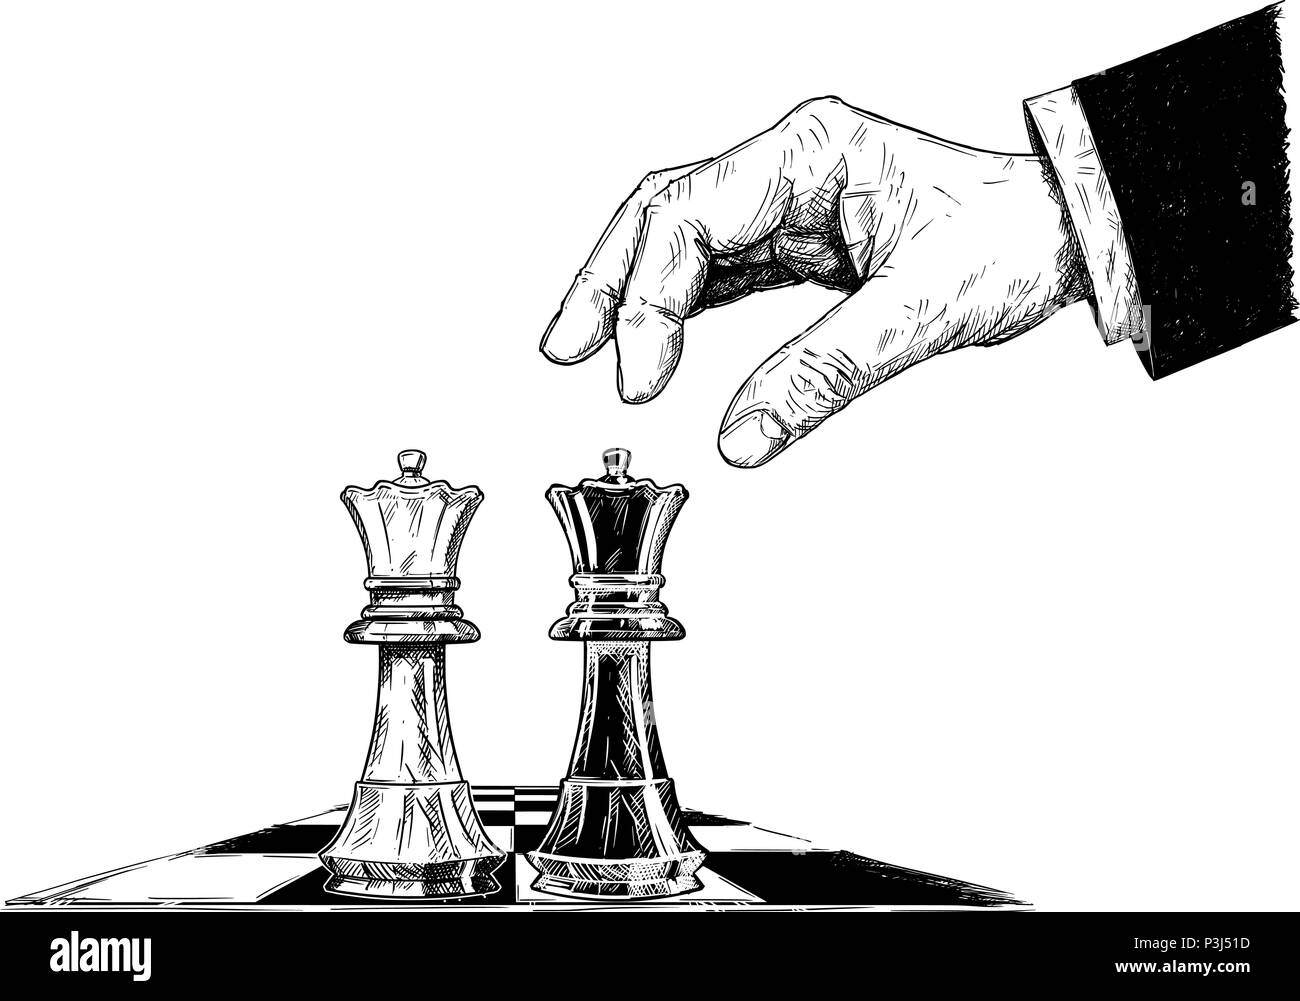 Dessin Artistique vecteur Illustration de deux reines d'échecs face à face Illustration de Vecteur